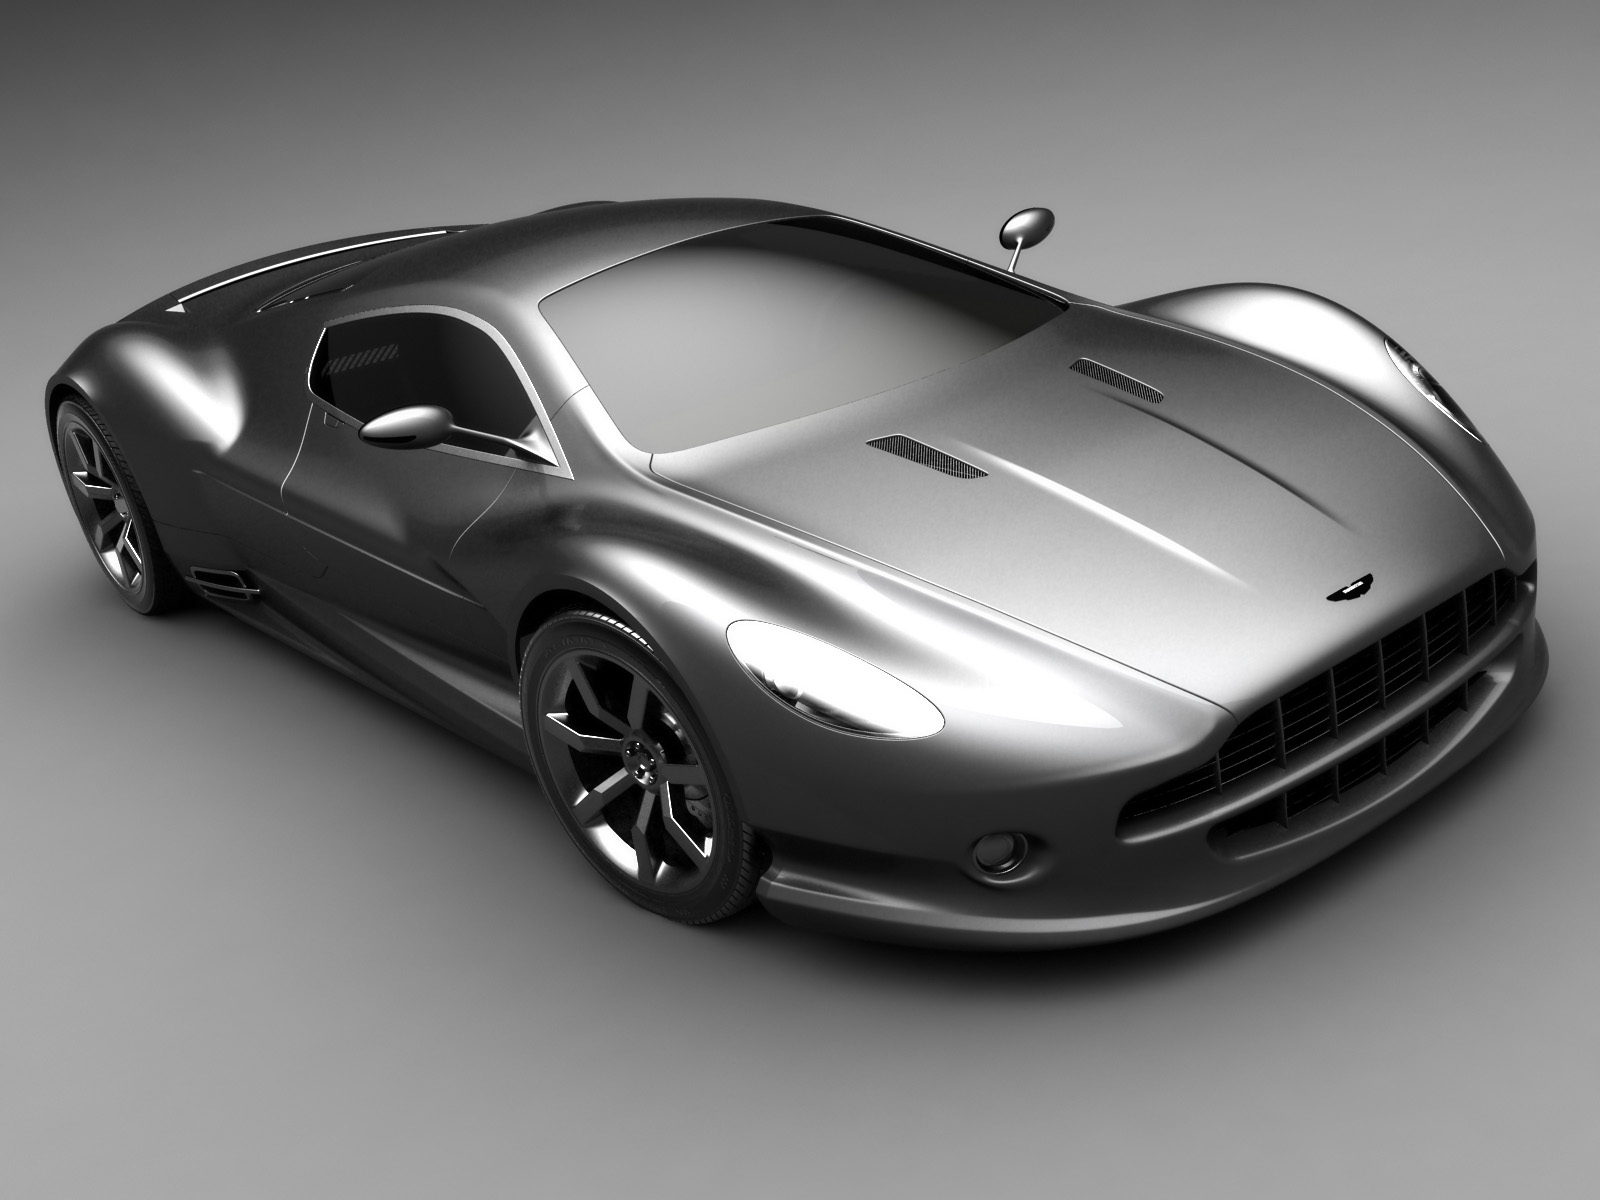 Aston Martin AMV10 HD wallpapers, Desktop wallpaper - most viewed